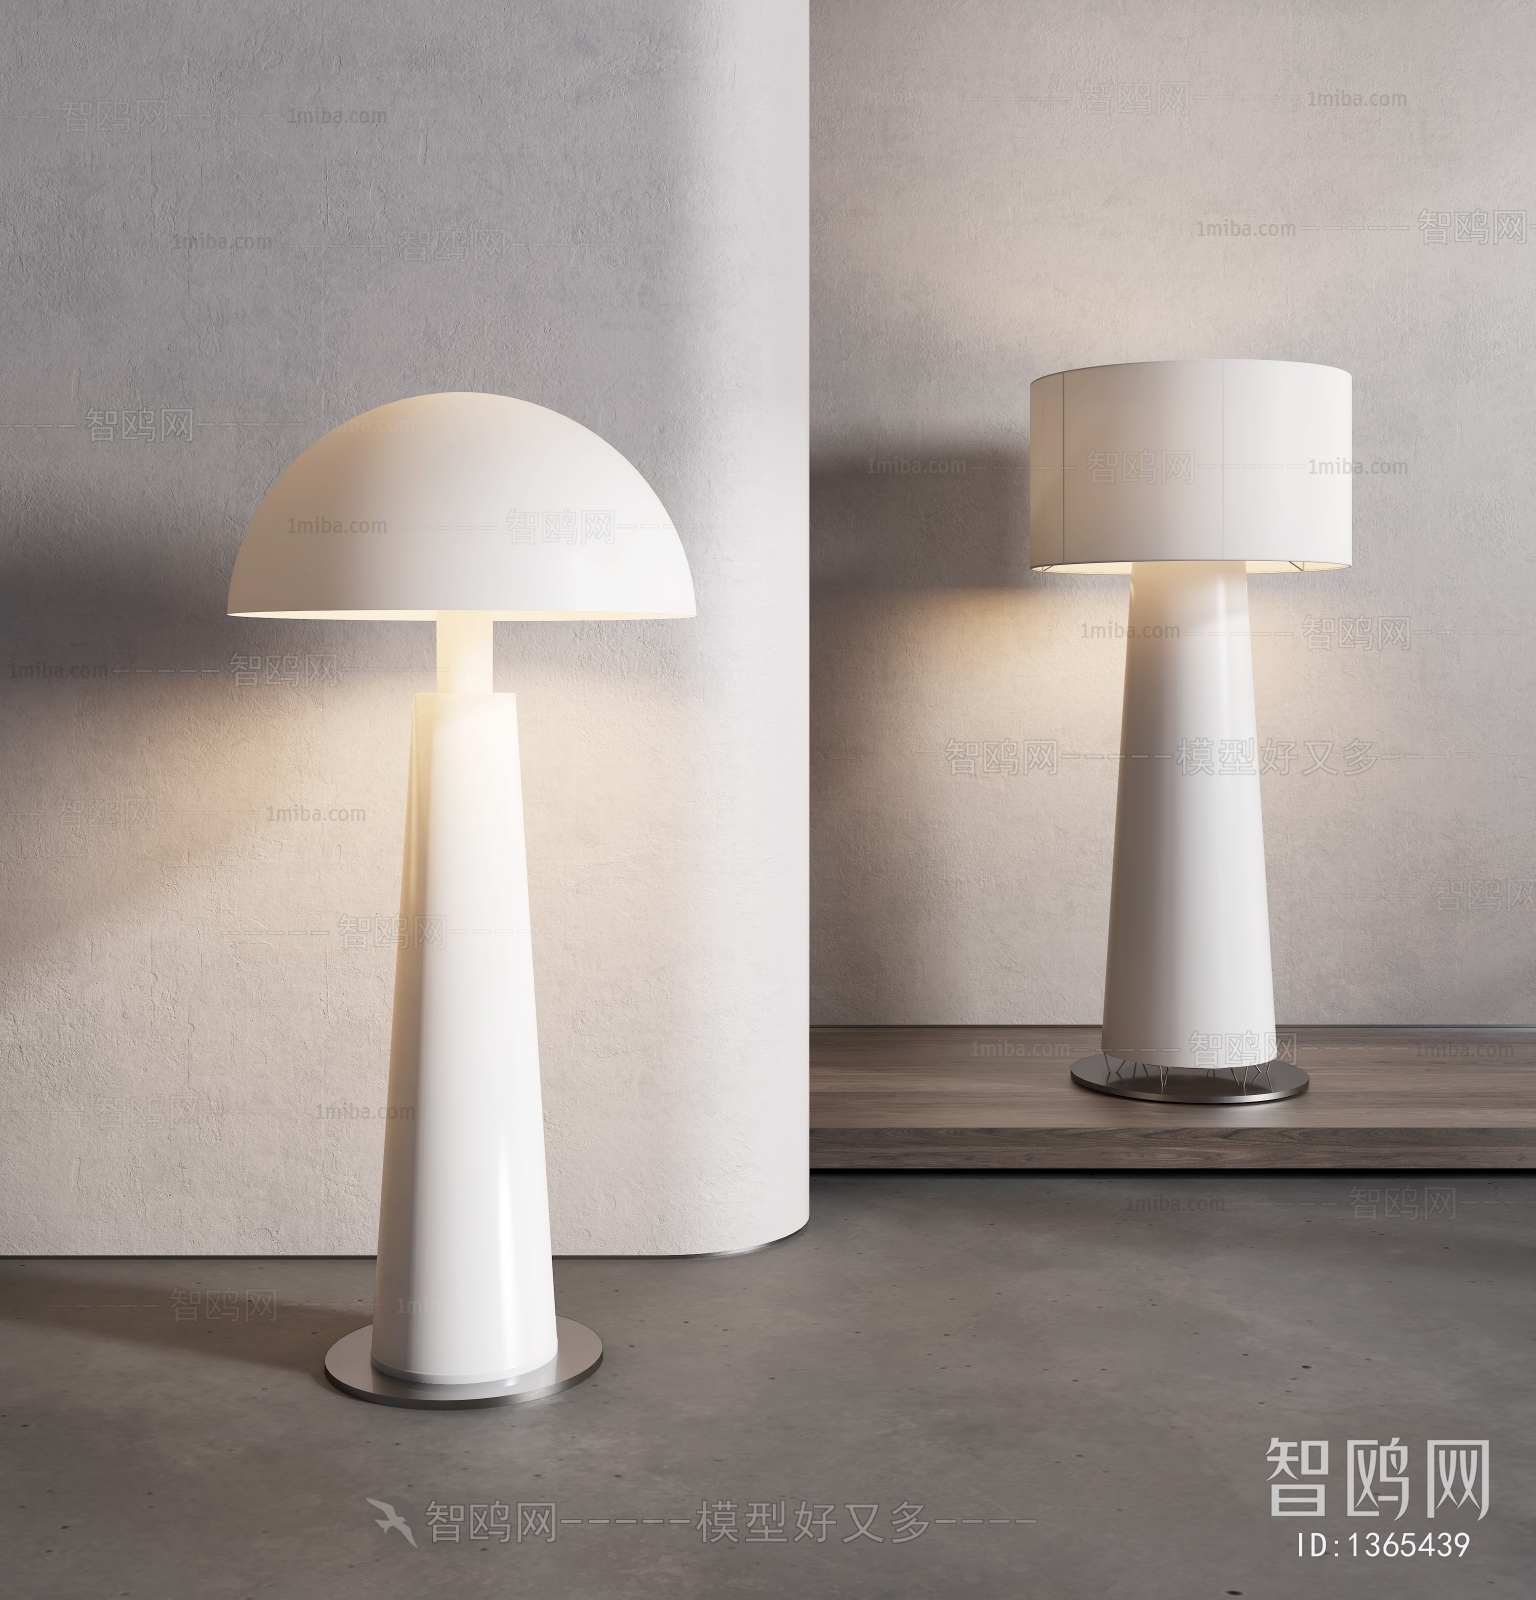 Modern Wabi-sabi Style Floor Lamp